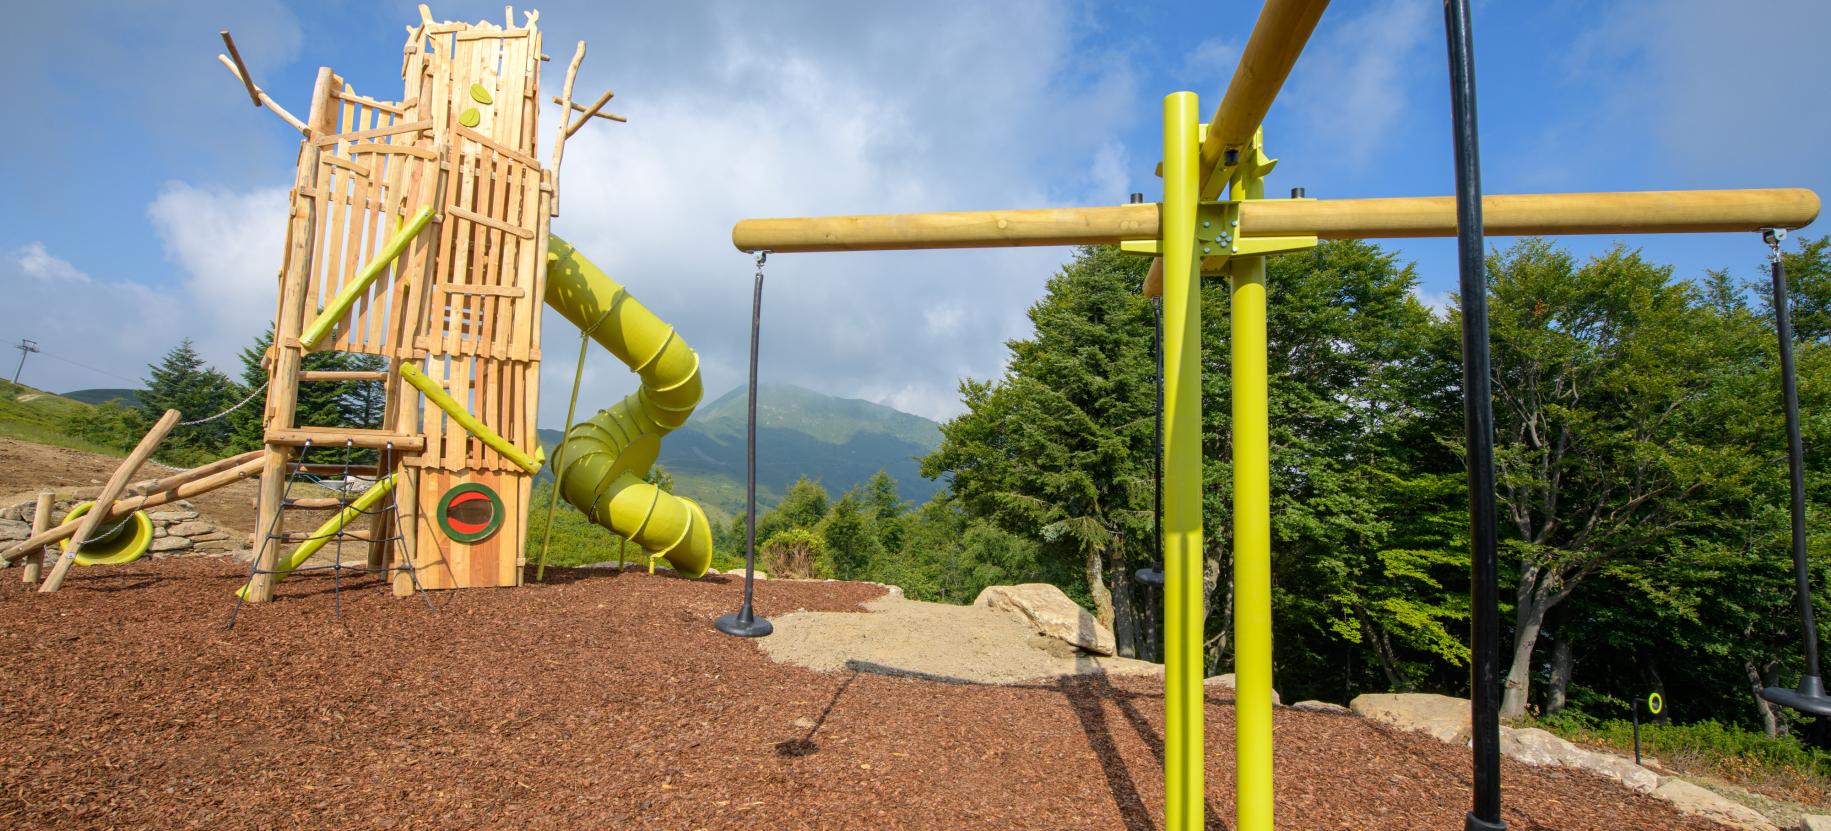 La Tana of Meraviglio playground, Alpe di Mera